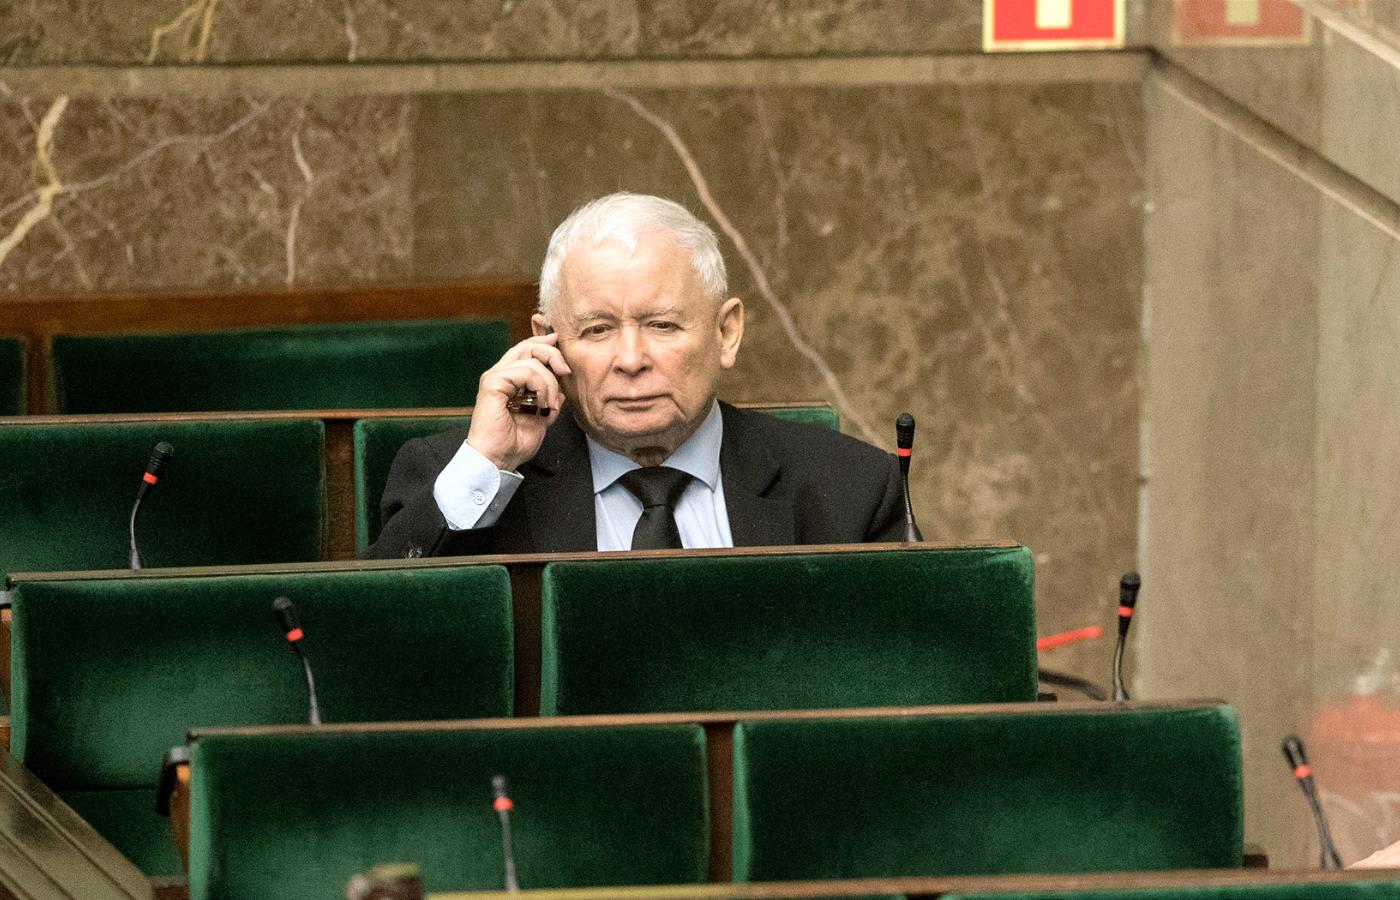 Czy Jarosław Kaczyński może w ogóle stracić władzę, jeśli opozycja pójdzie do wyborów w takim stanie, w jakim znajduje się dzisiaj?